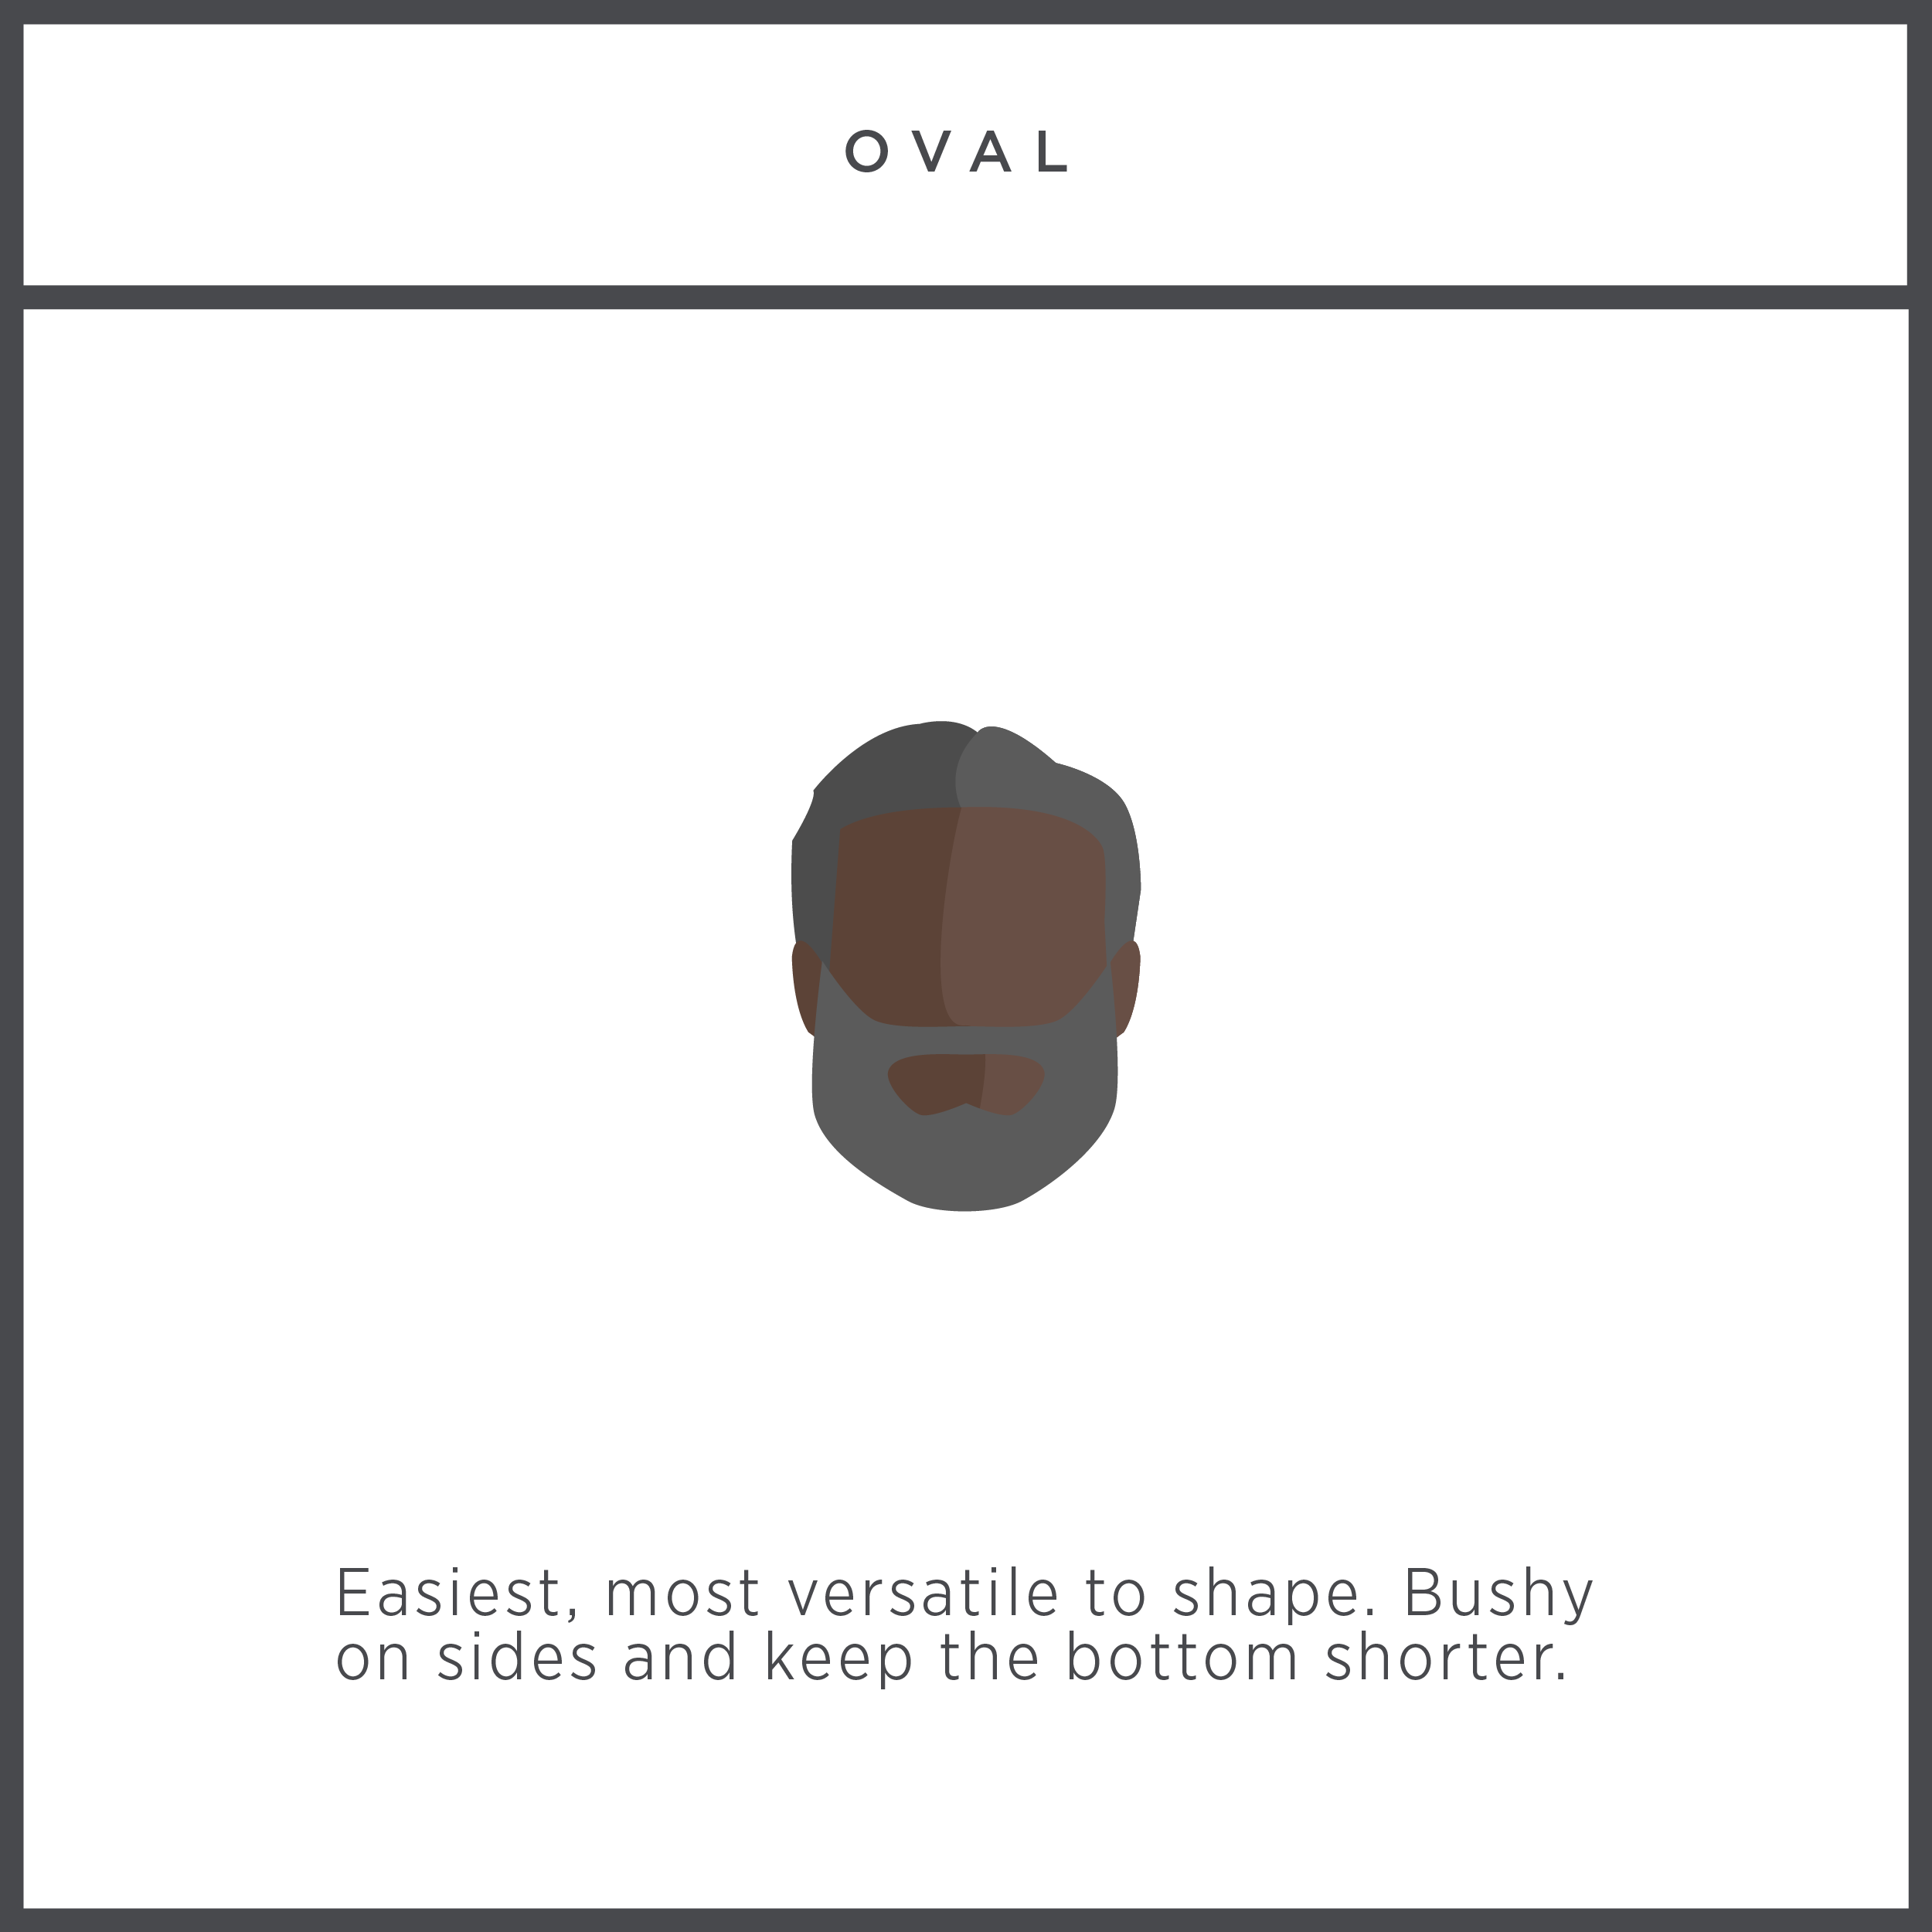 Bảng hình dạng khuôn mặt và kiểu râu cho khuôn mặt hình oval theo The Manual